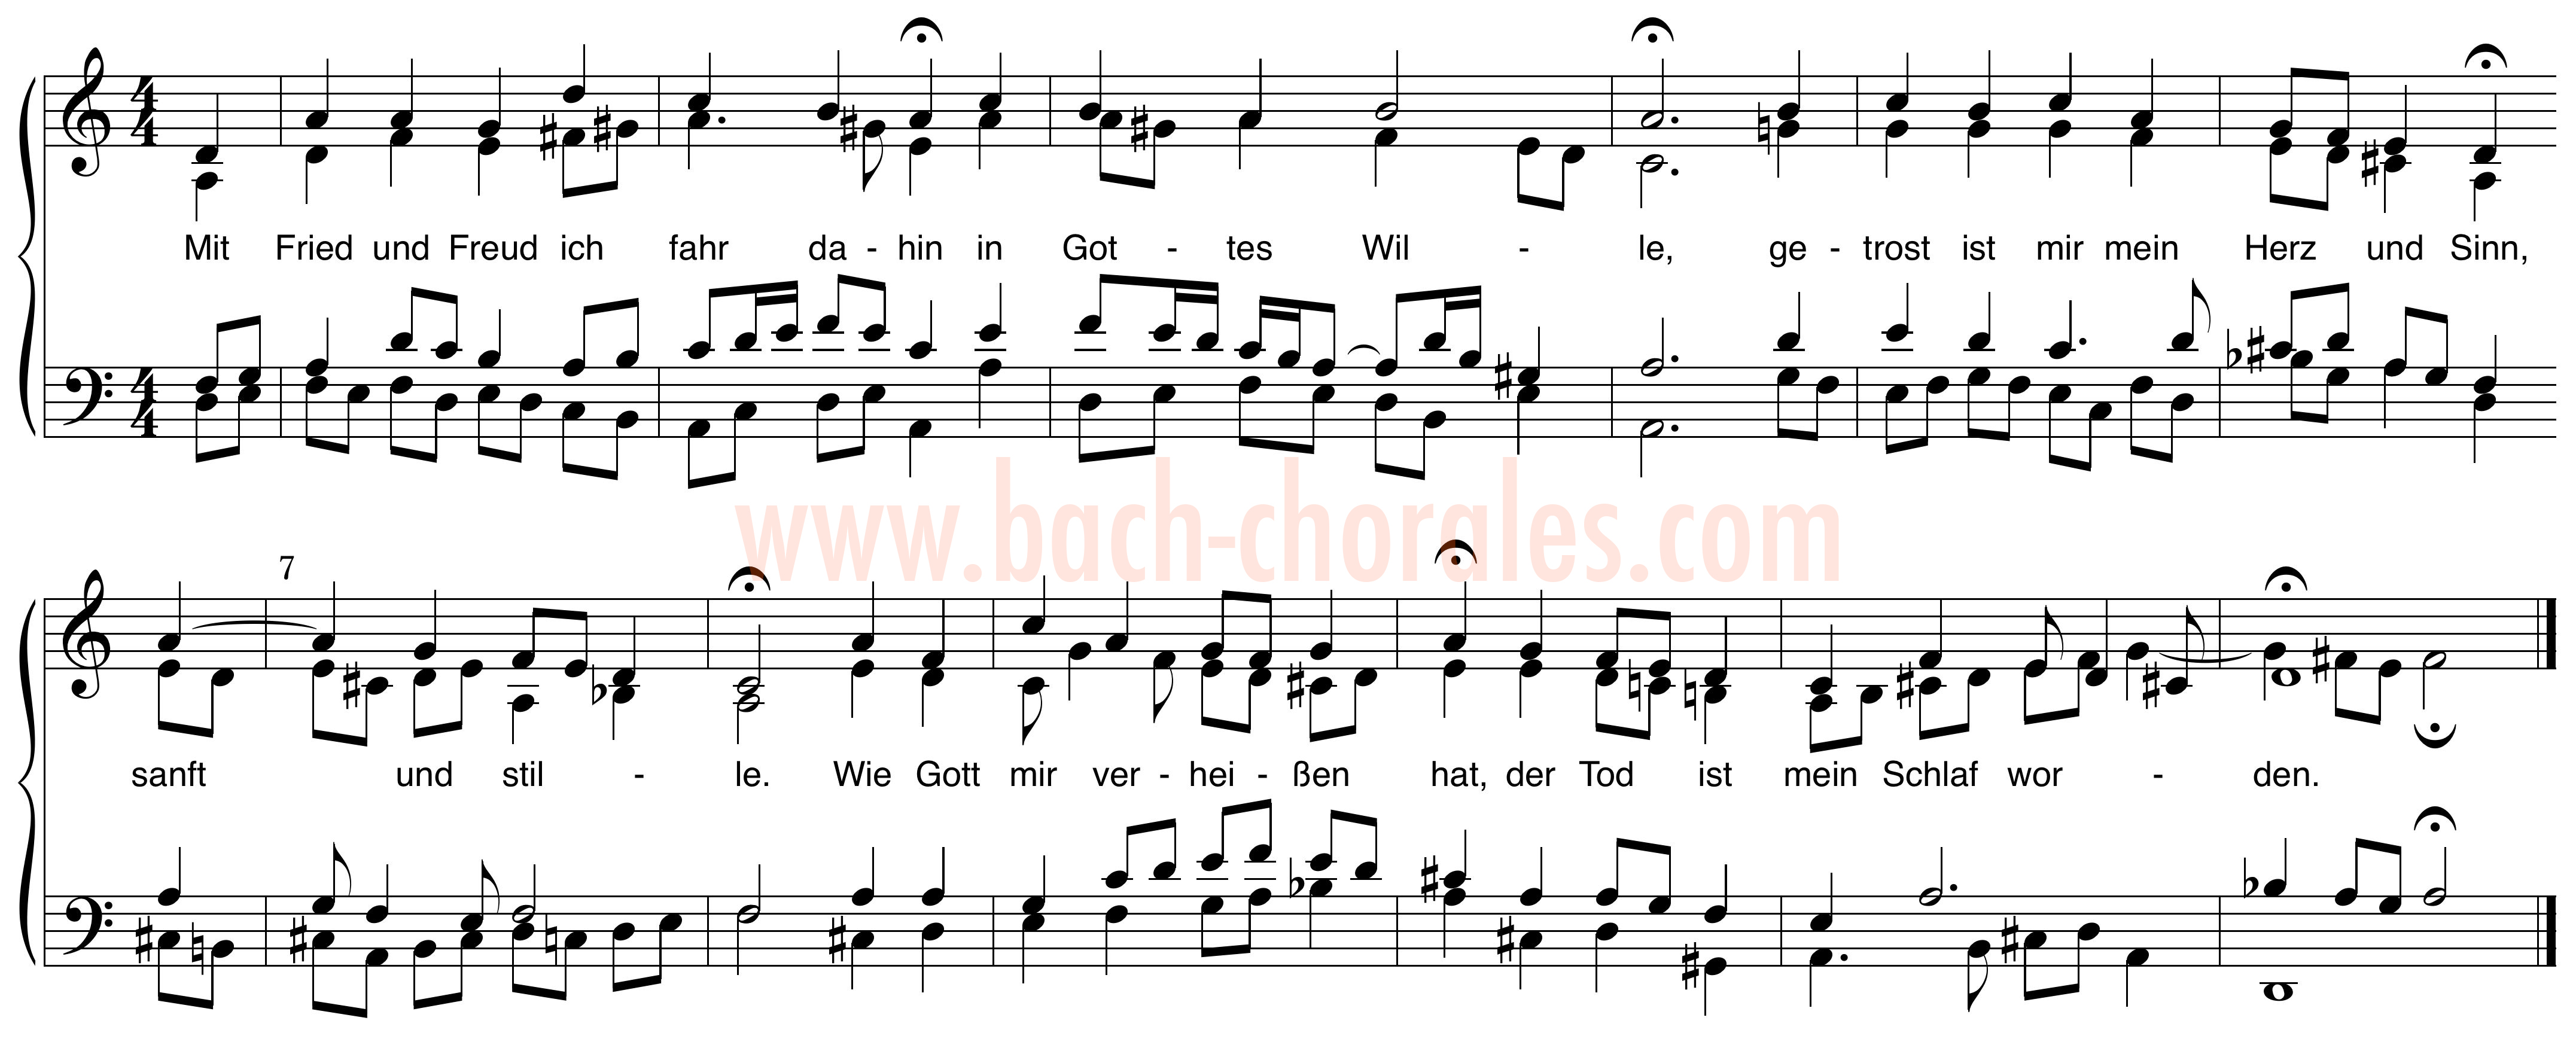 notenbeeld BWV 382 op https://www.bach-chorales.com/